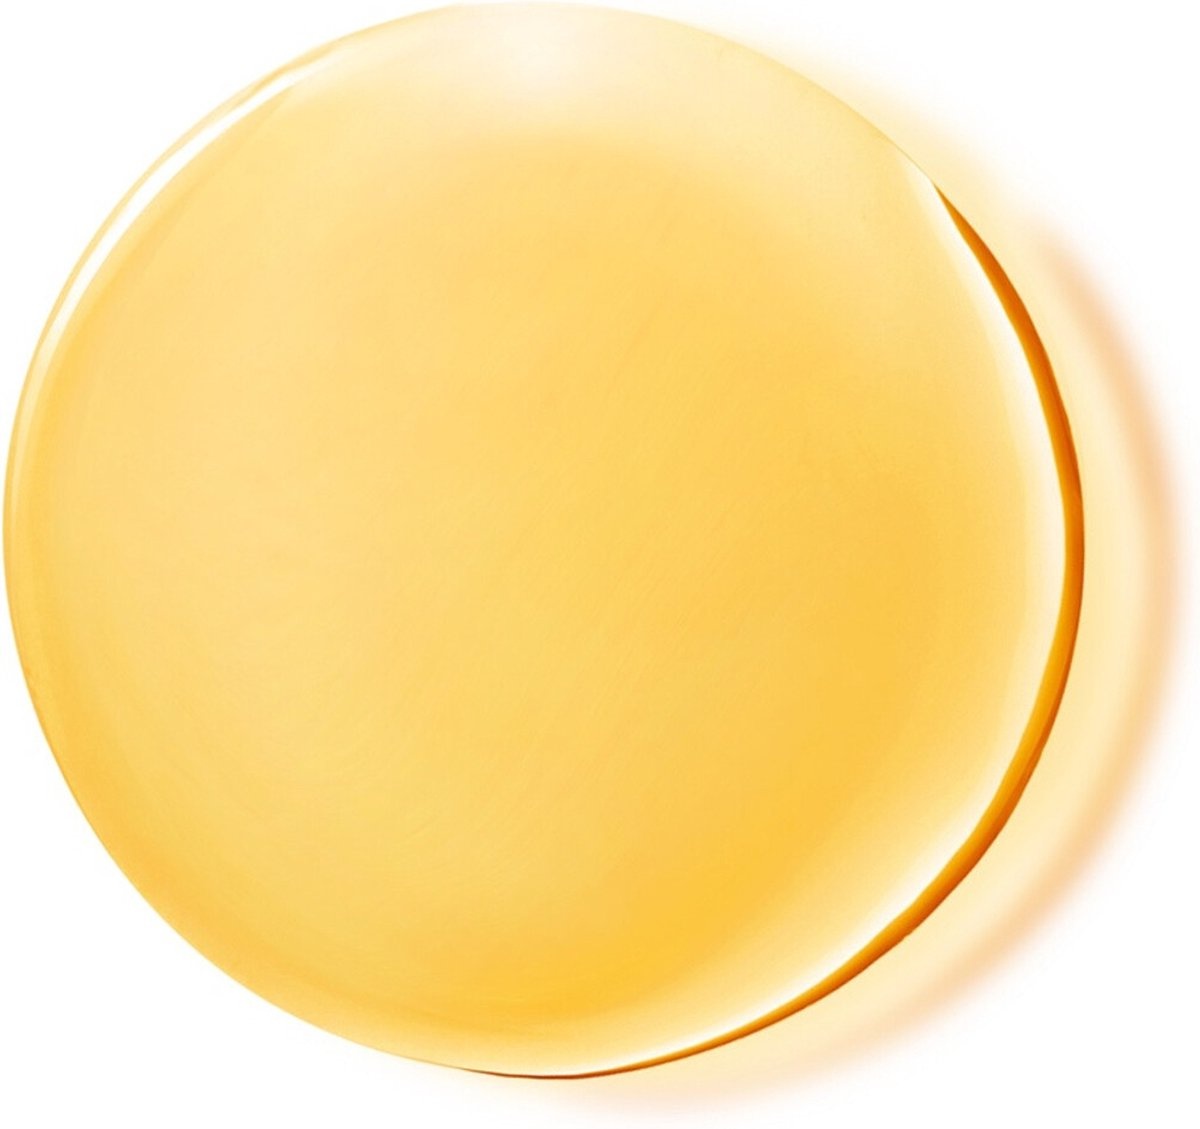 Lancaster Sun Beauty Satin Dry Oil SPF30 - Zonbescherming - 150 ml - Verpakking beschadigd